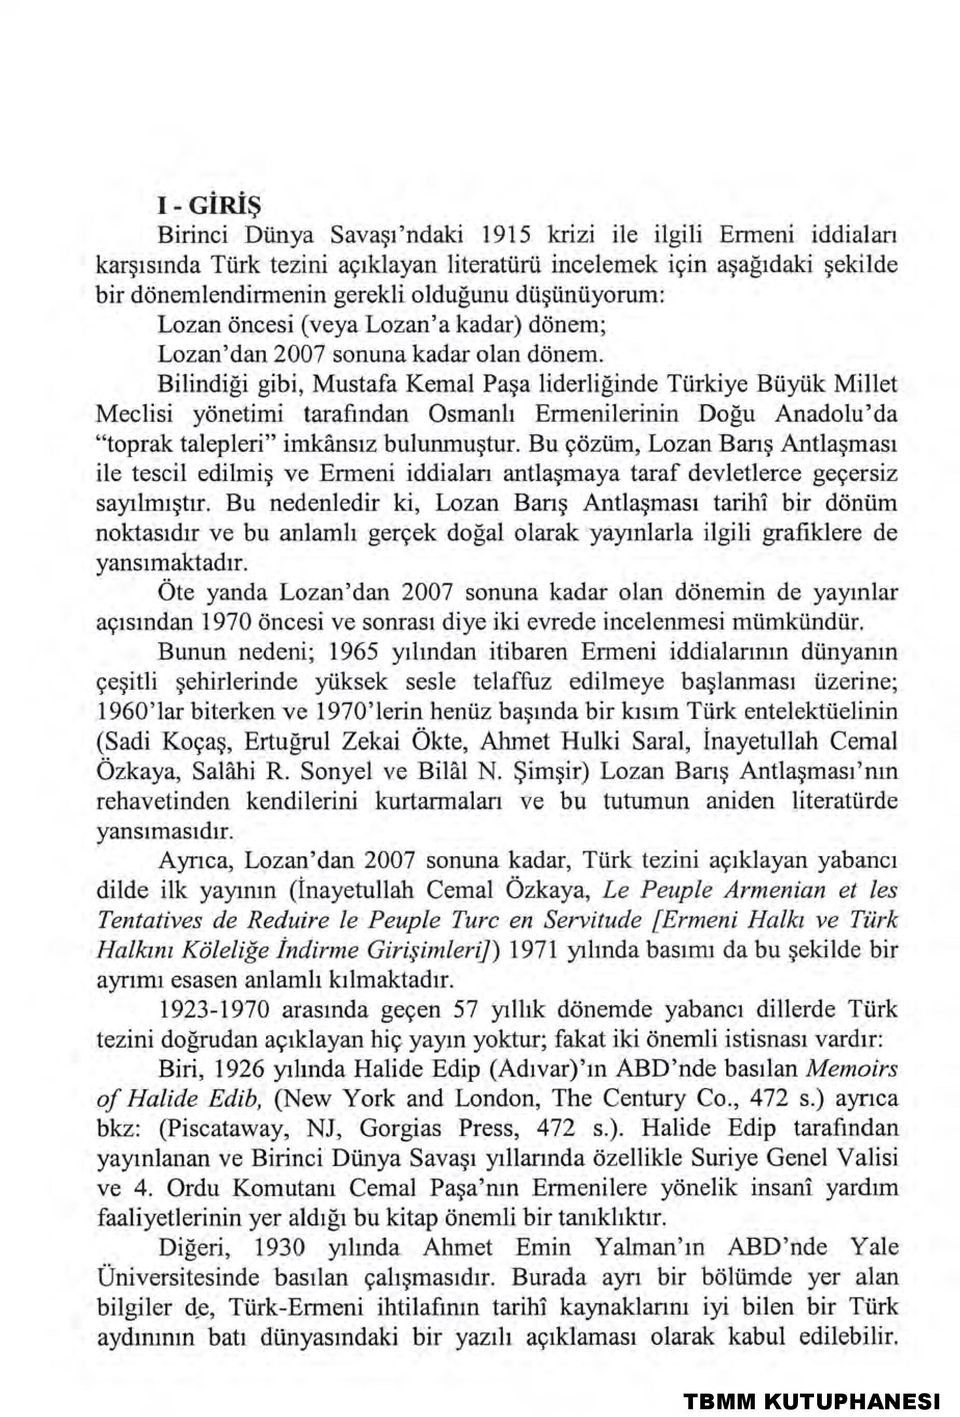 Bilindiği gibi, Mustafa Kemal Paşa liderliğinde Türkiye Büyük Millet Meclisi yönetimi tarafından Osmanlı Ermenilerinin Doğu Anadolu'da "toprak talepleri" imkânsız bulunmuştur.